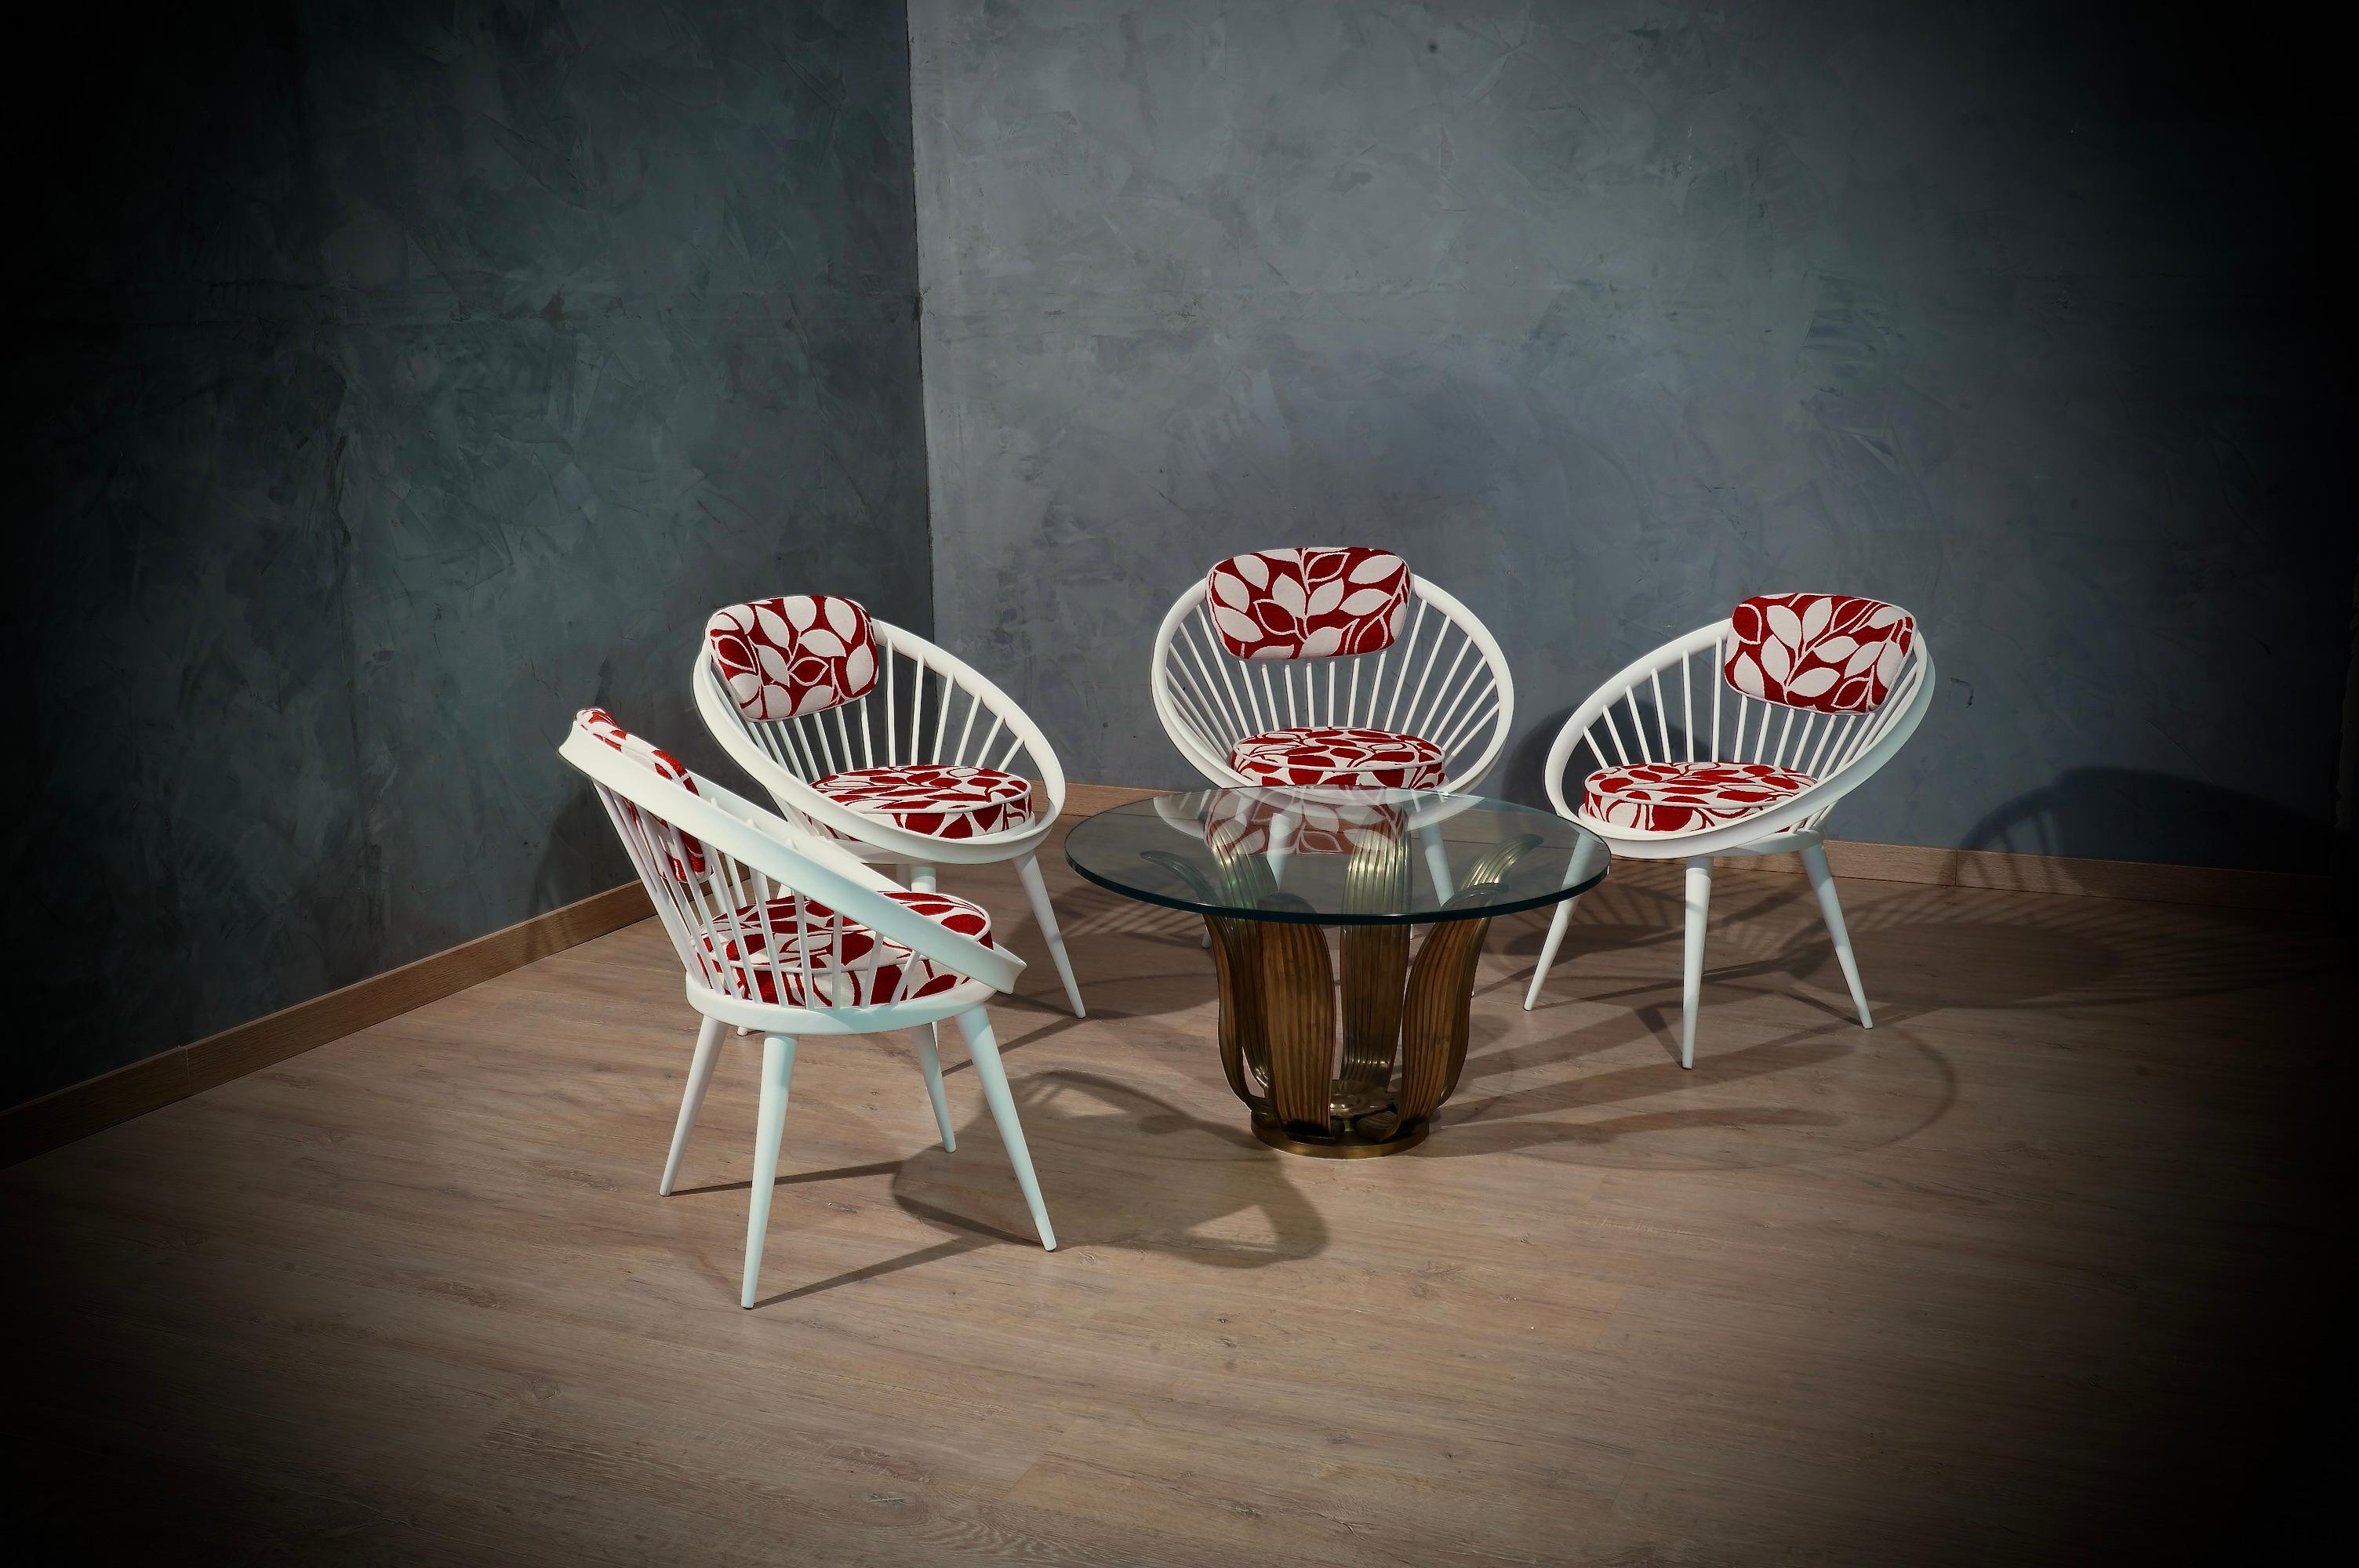 Charakteristischer Kreisstuhl von Yngve Ekström, aufregendes Design, das durch den schönen weiß-roten Stoff elegant wird.

Der Stuhl ist ein klassischer Kreisstuhl von Yngve Ekström, der aus Buchenholz gefertigt und in diesem Fall weiß lackiert